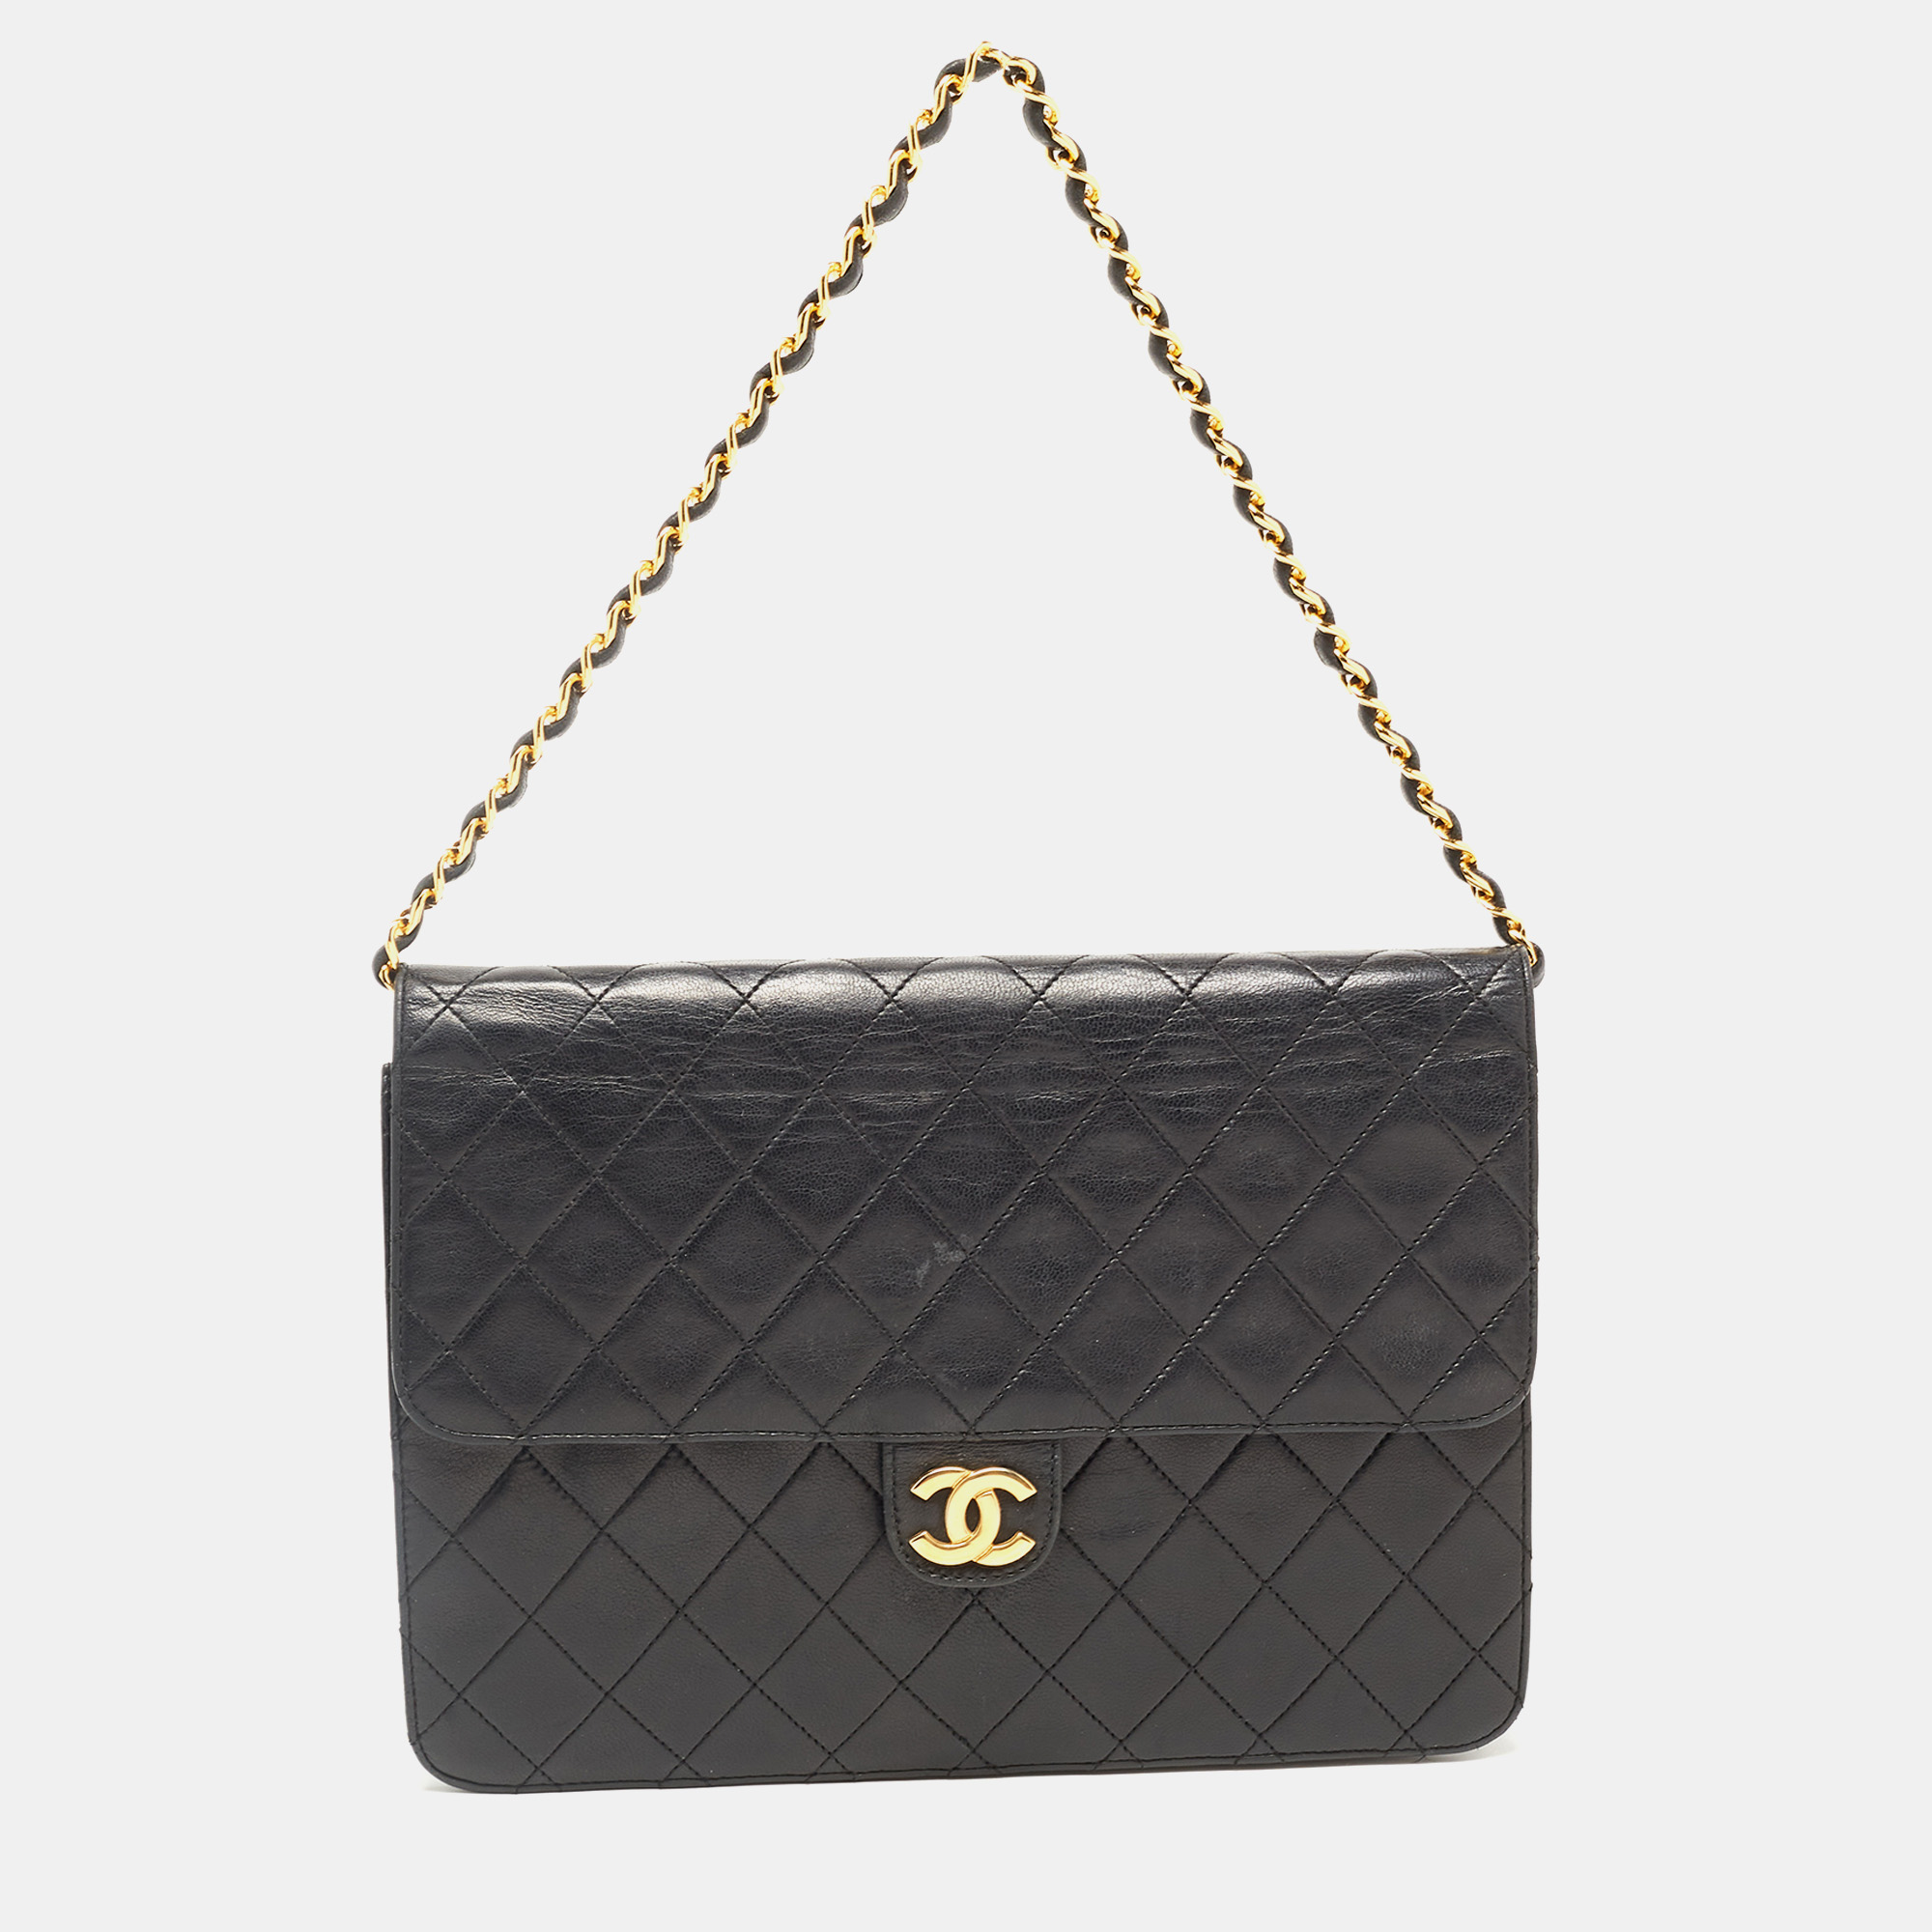 Pre-owned Chanel Black Leather Vintage Cc Square Flap Shoulder Bag